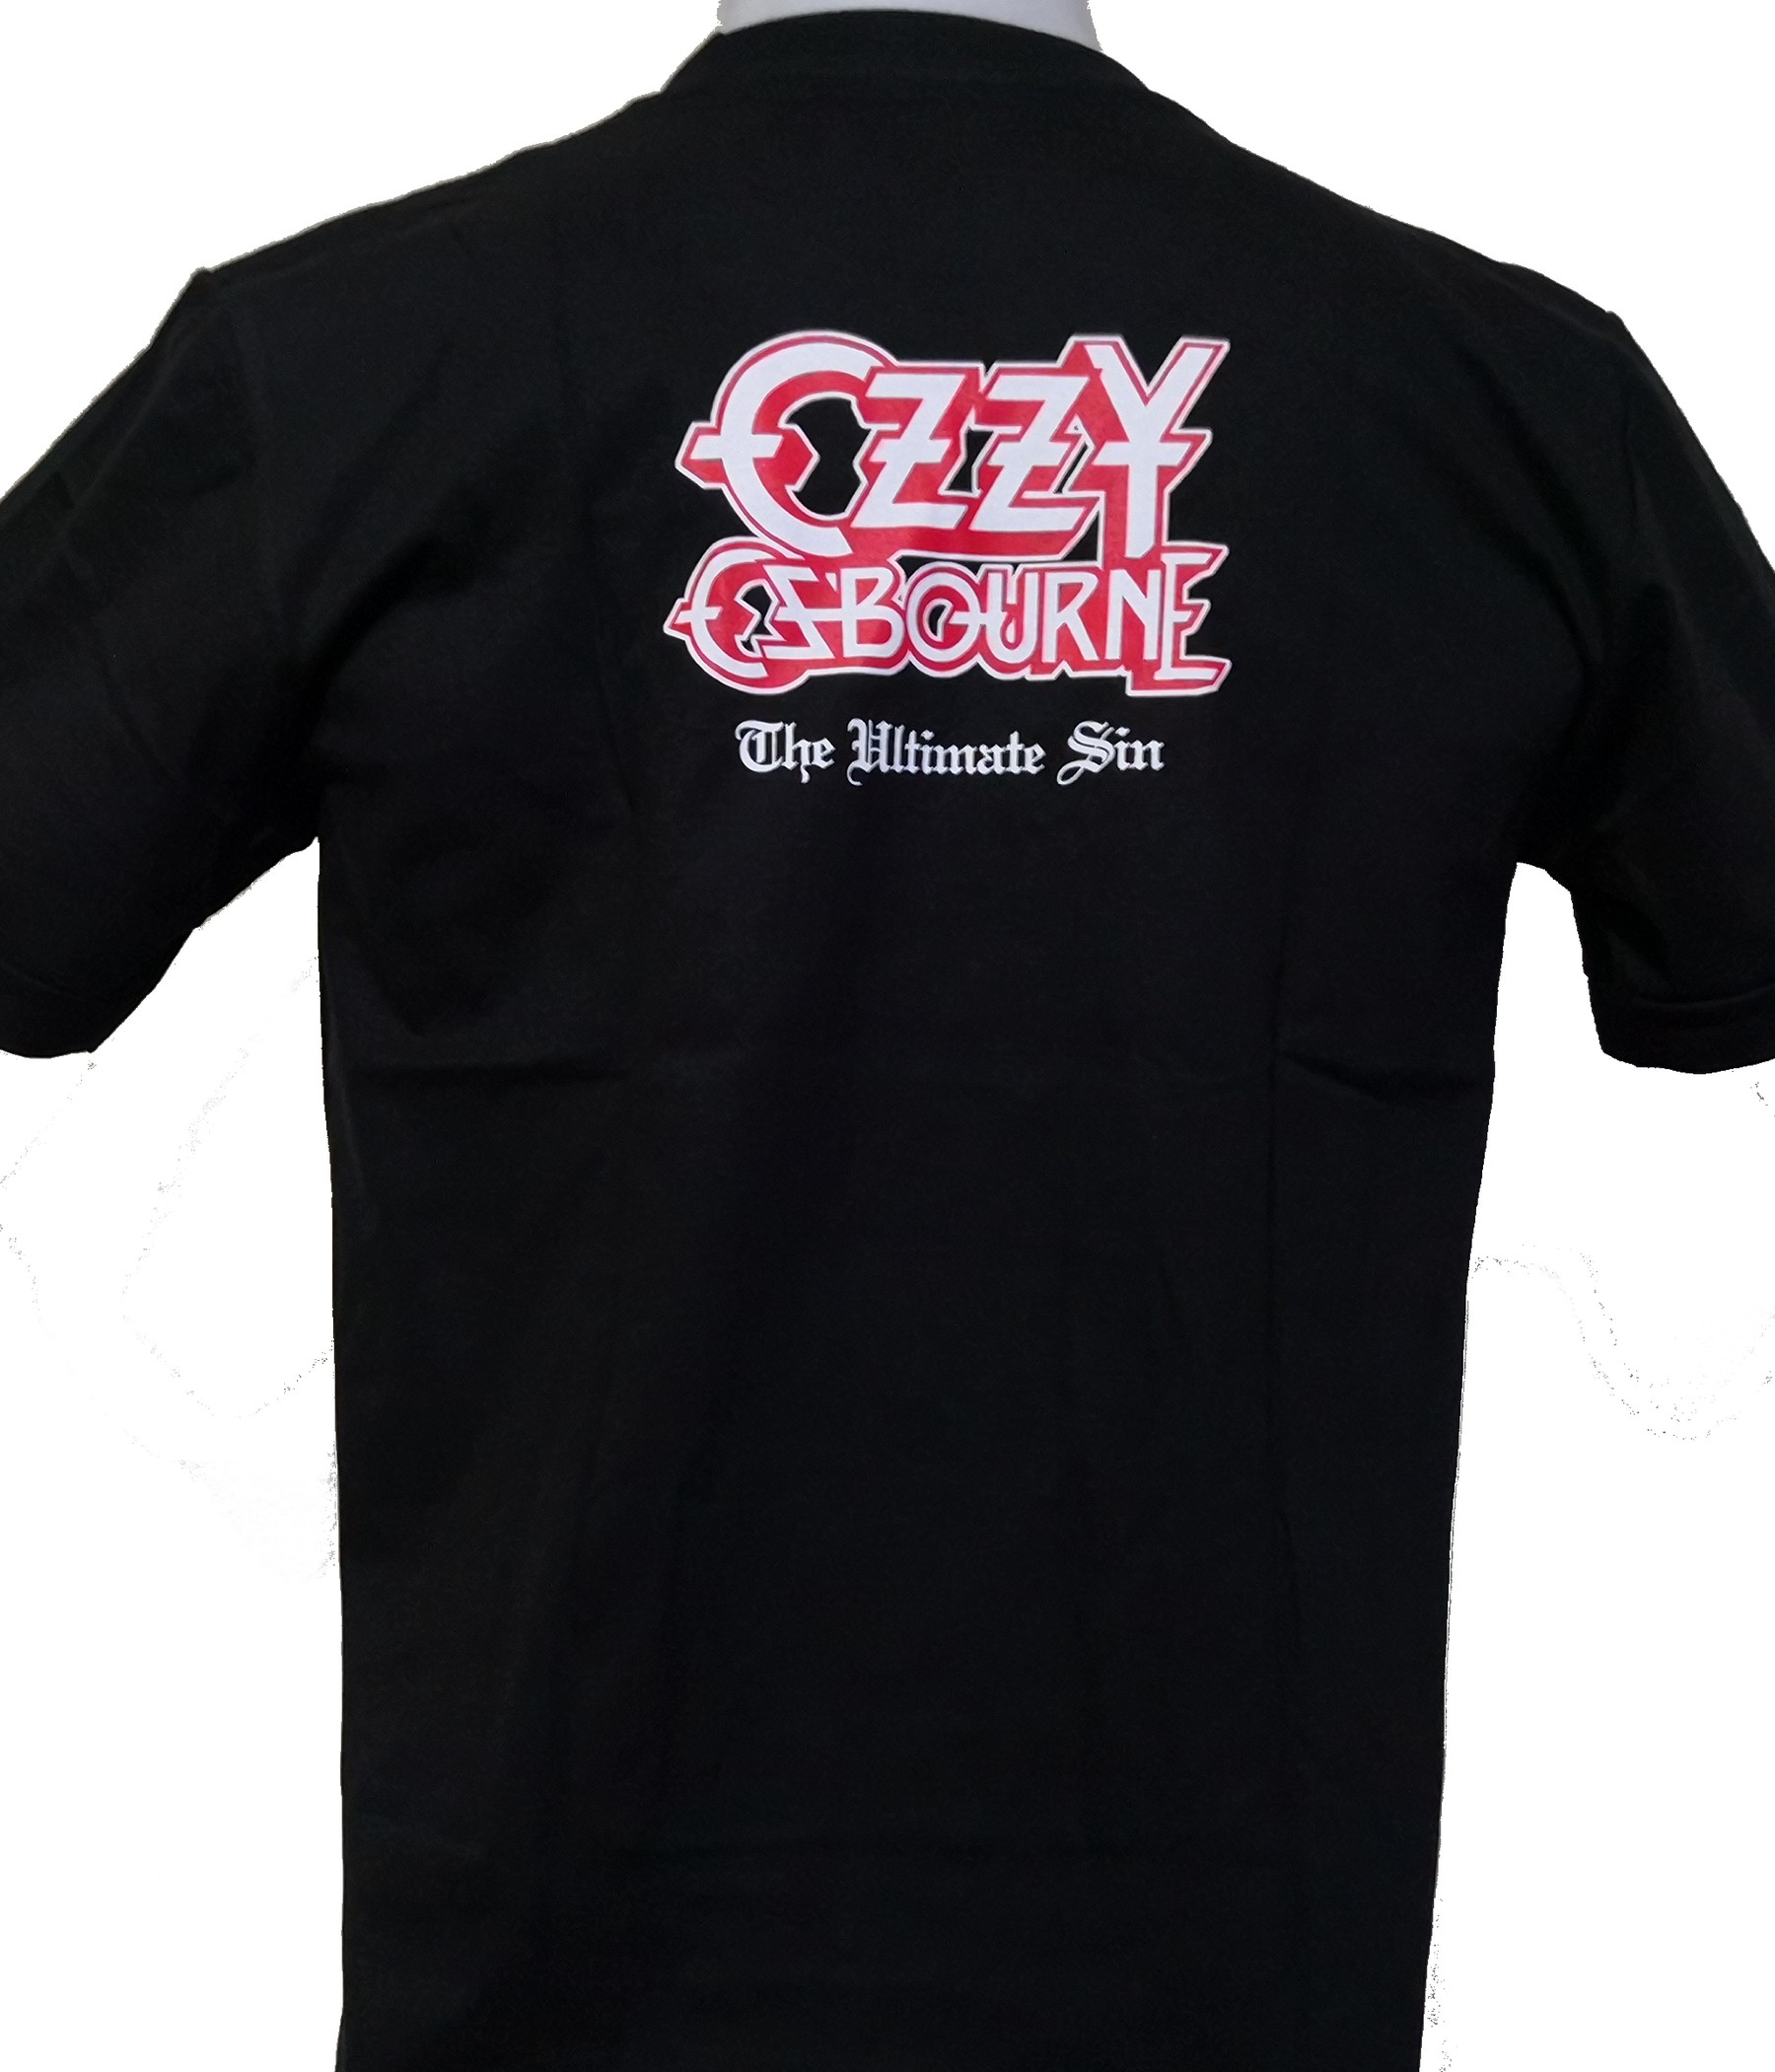 Ozzy Osbourne t-shirt The Ultimate Sin size XXL – RoxxBKK